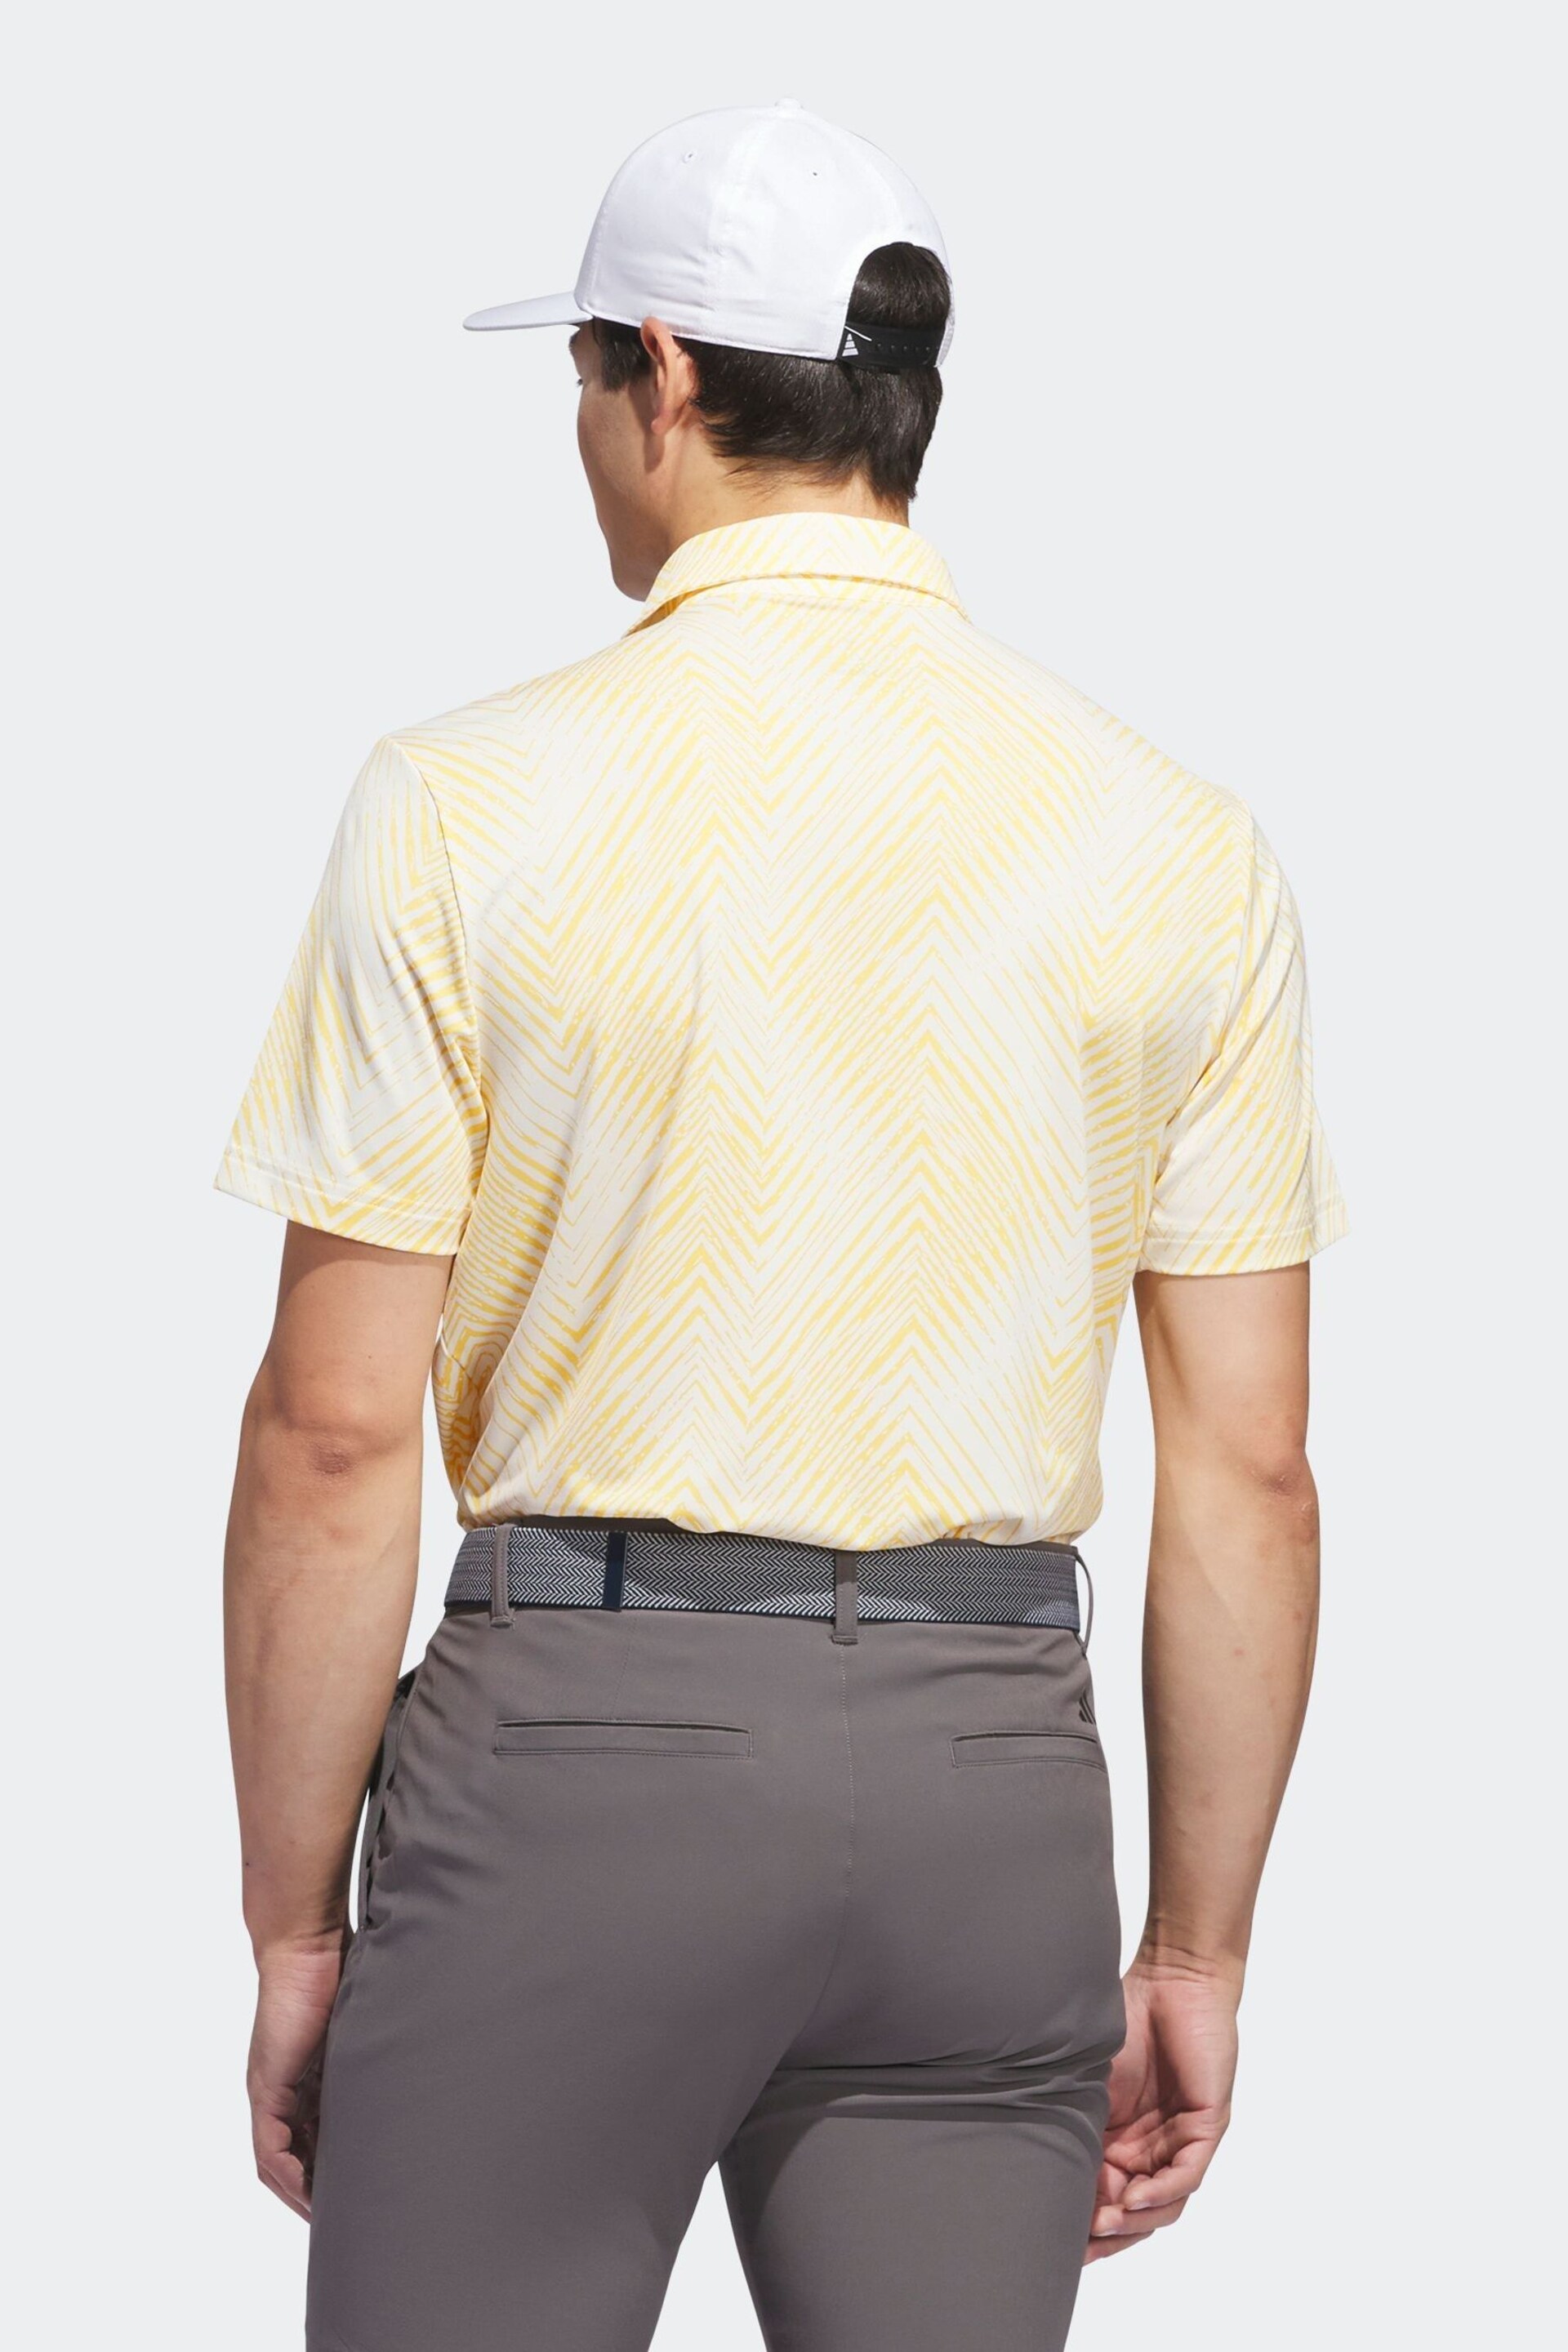 adidas Golf Ultimate 365 All Over Print Polo Shirt - Image 4 of 9